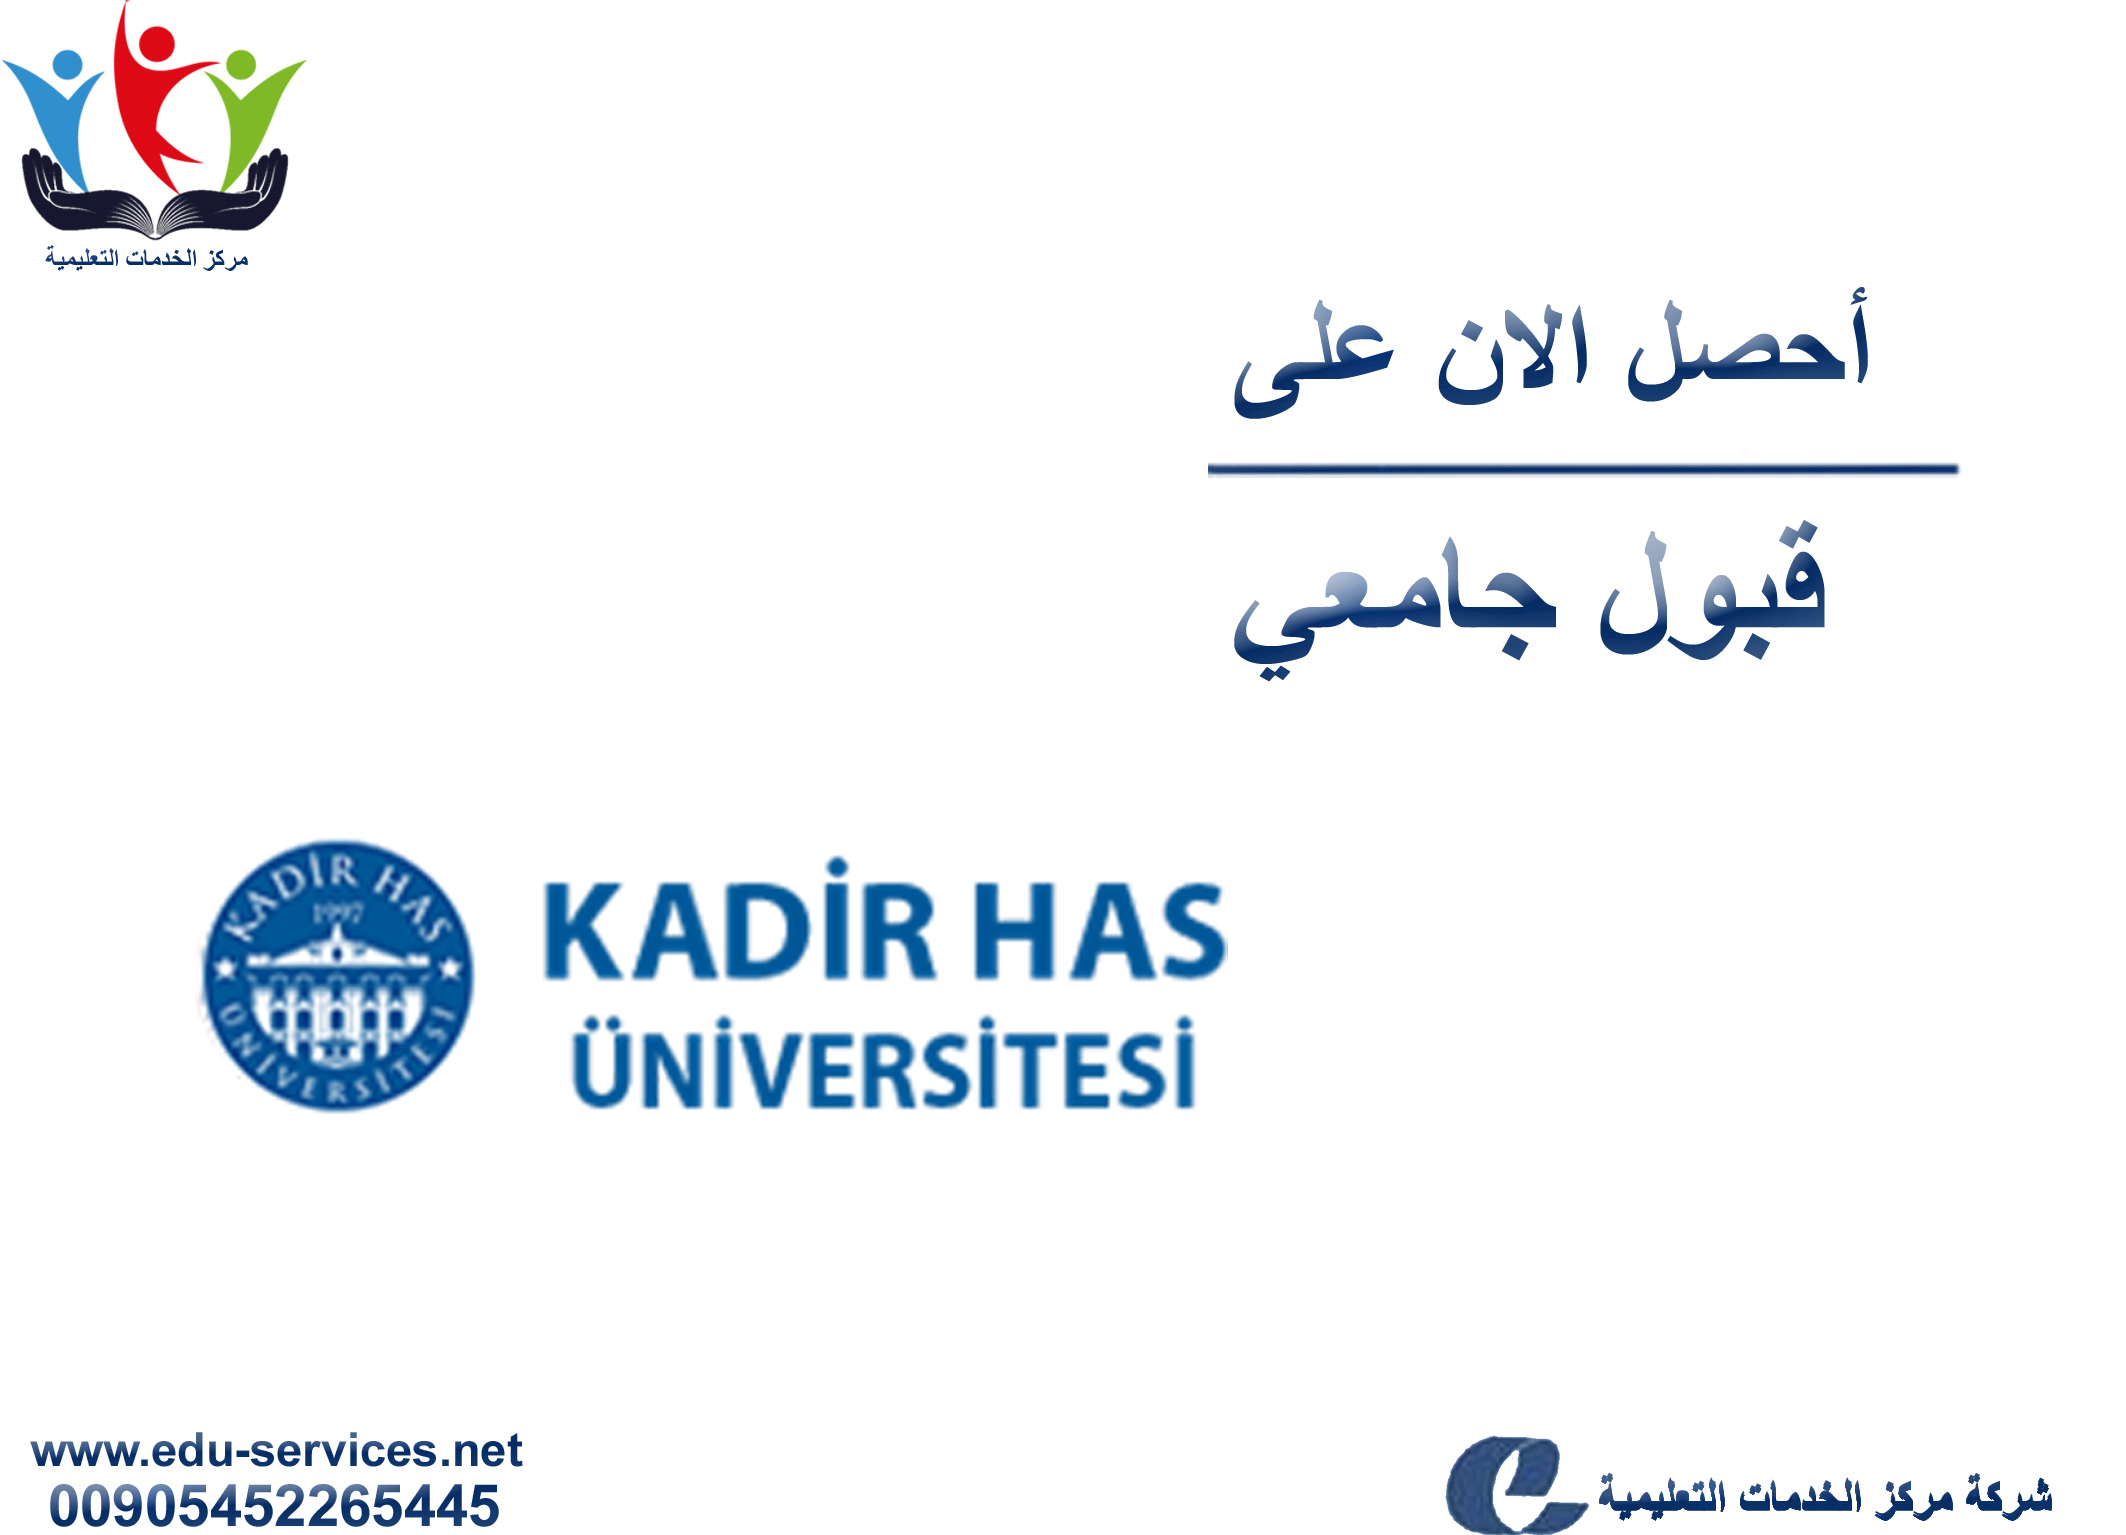 جامعة قادر هاس